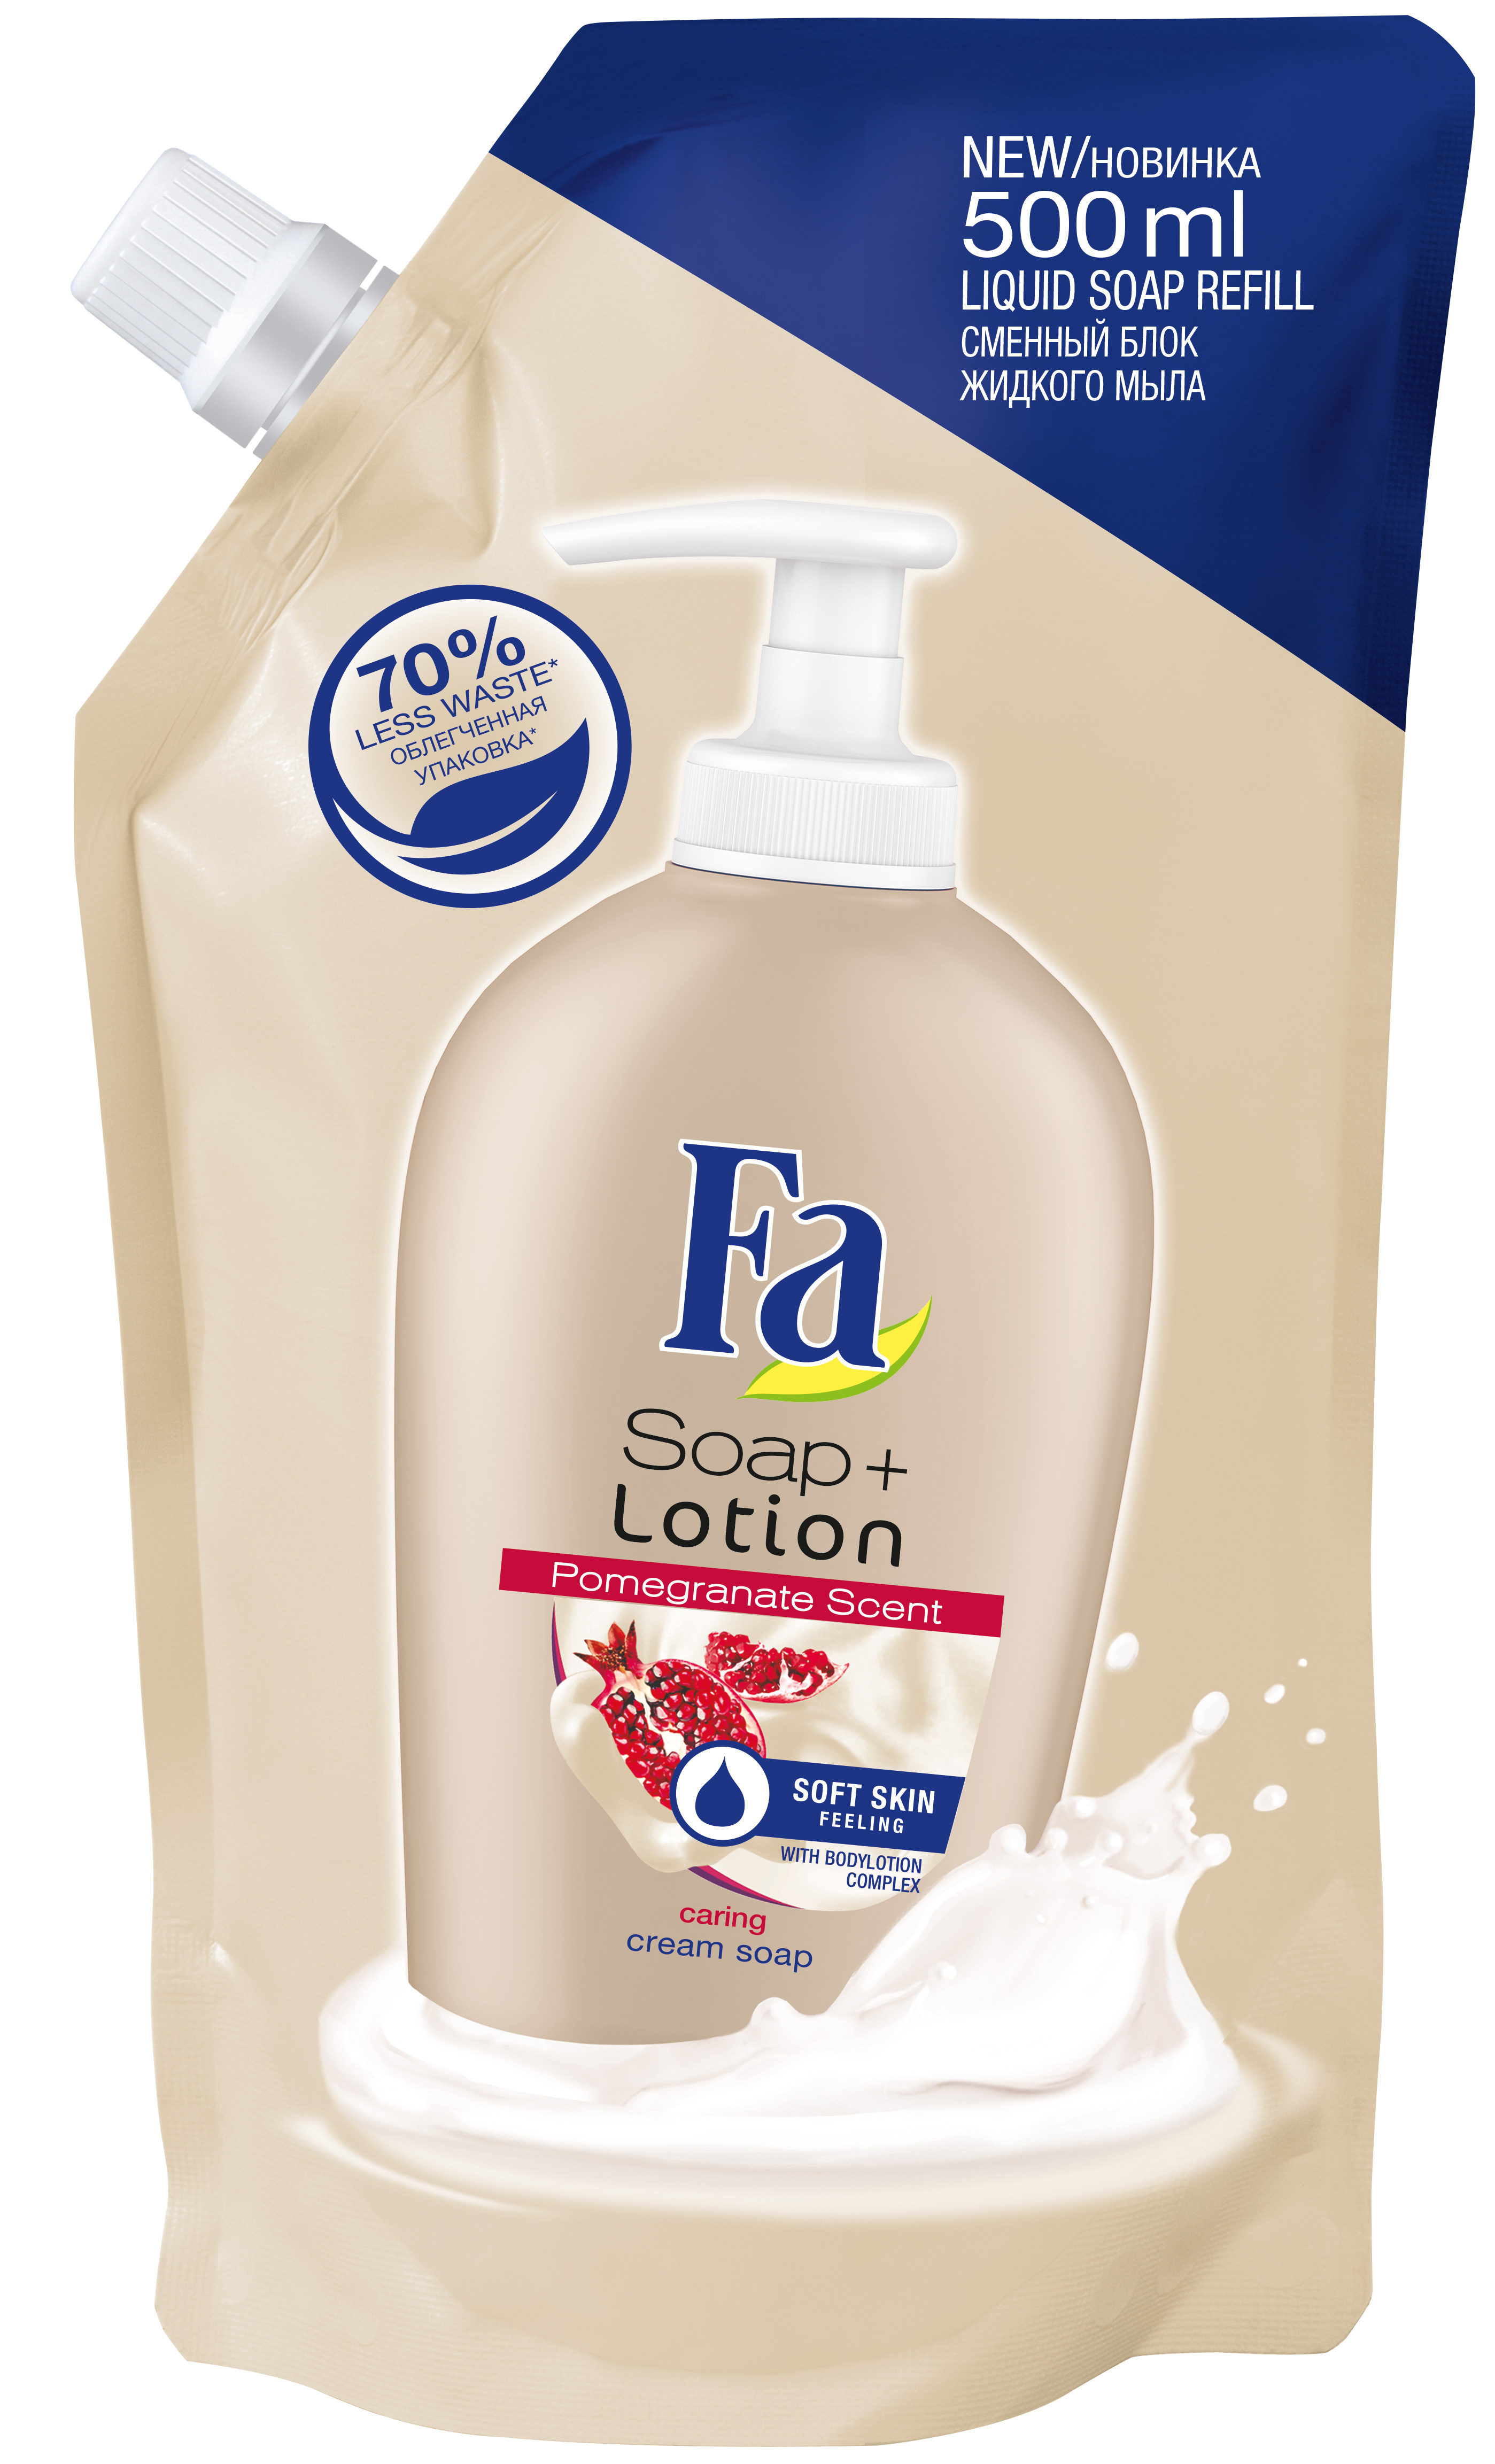 Mýdla Fa – antibakteriální účinek, péče a hydratace